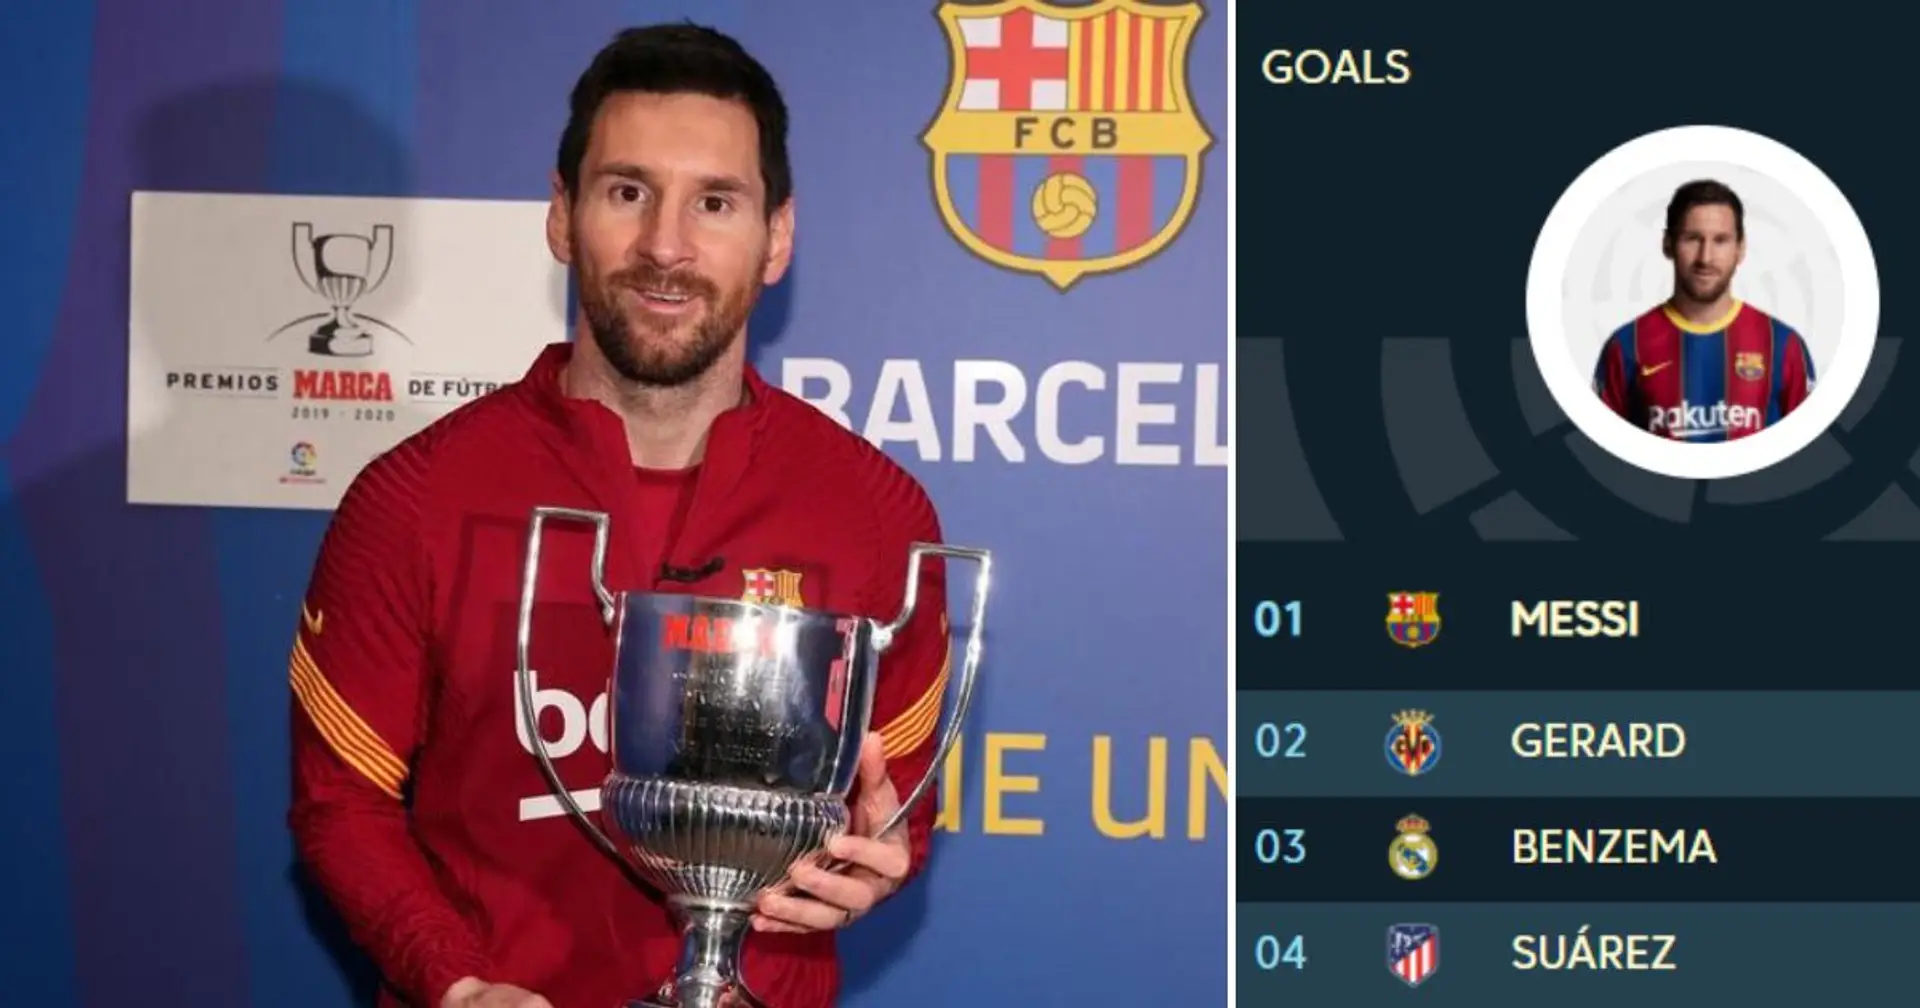 OFFICIEL: Messi remporte le trophée Pichichi 2020/21